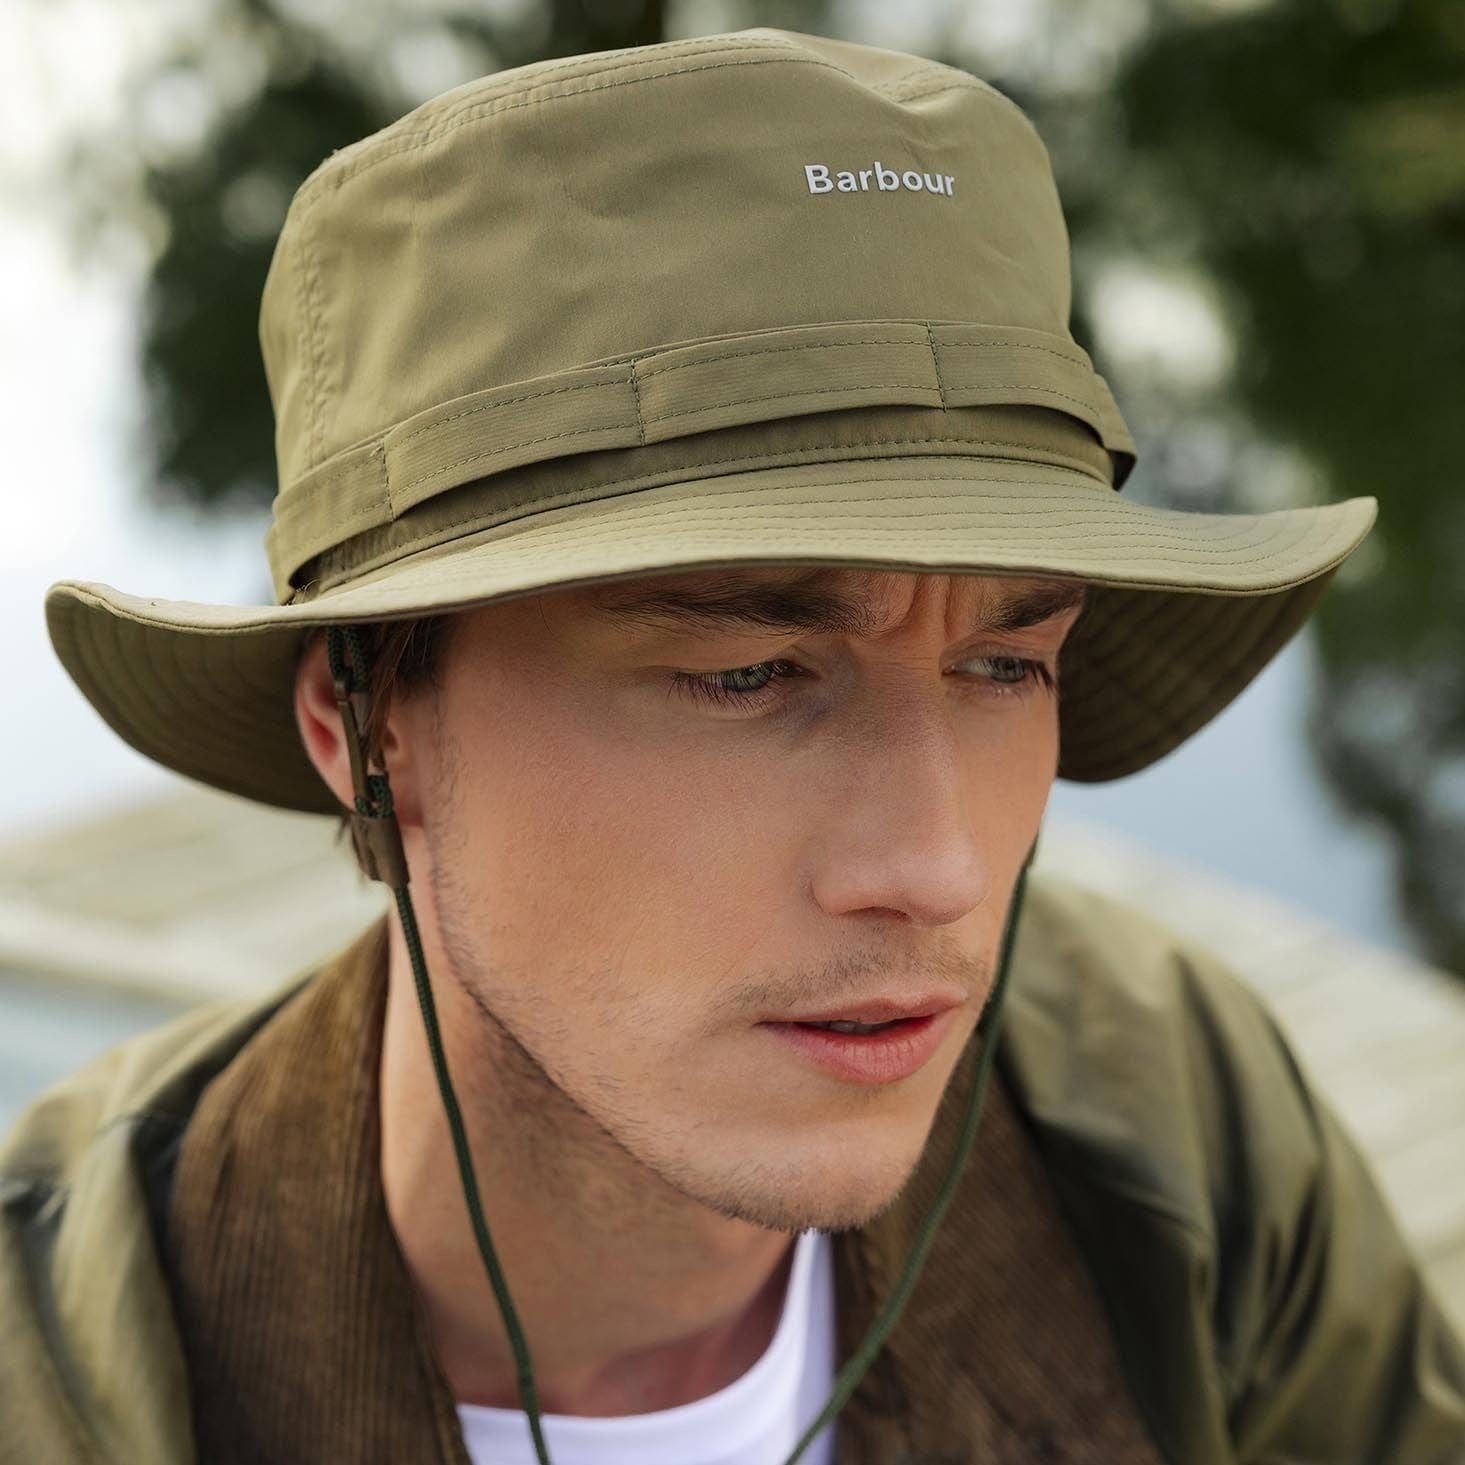 Barbour Teesdale Showerproof Bucket Hat in Army Green